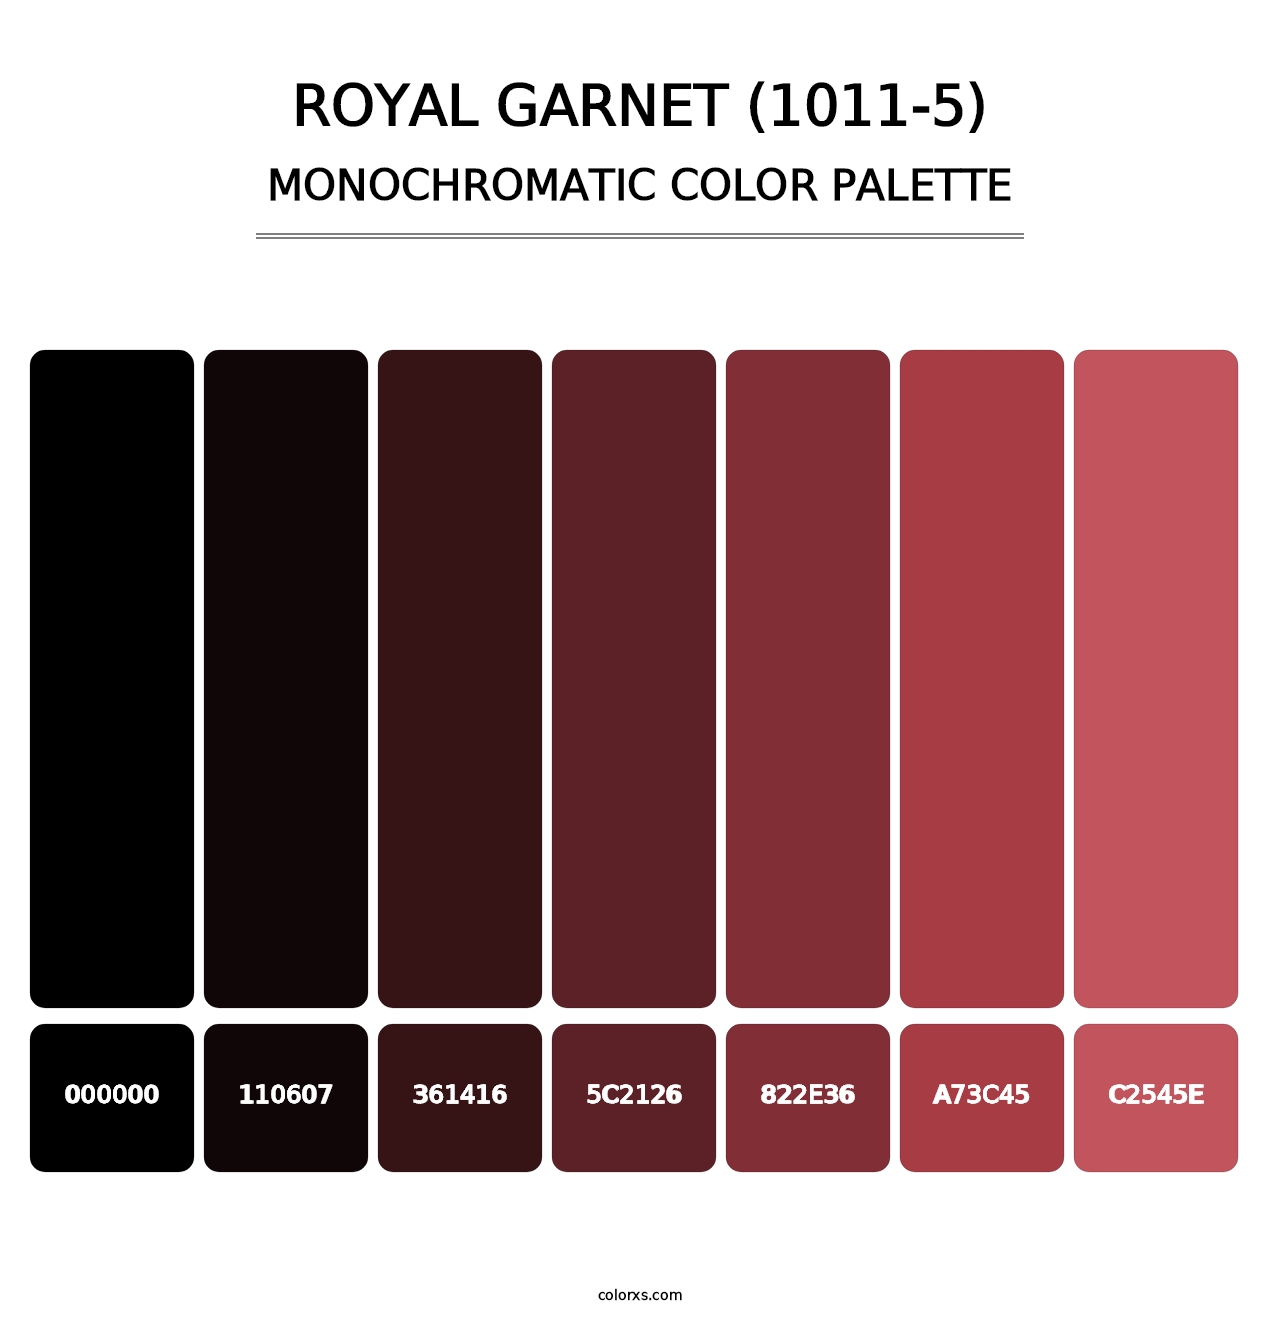 Royal Garnet (1011-5) - Monochromatic Color Palette